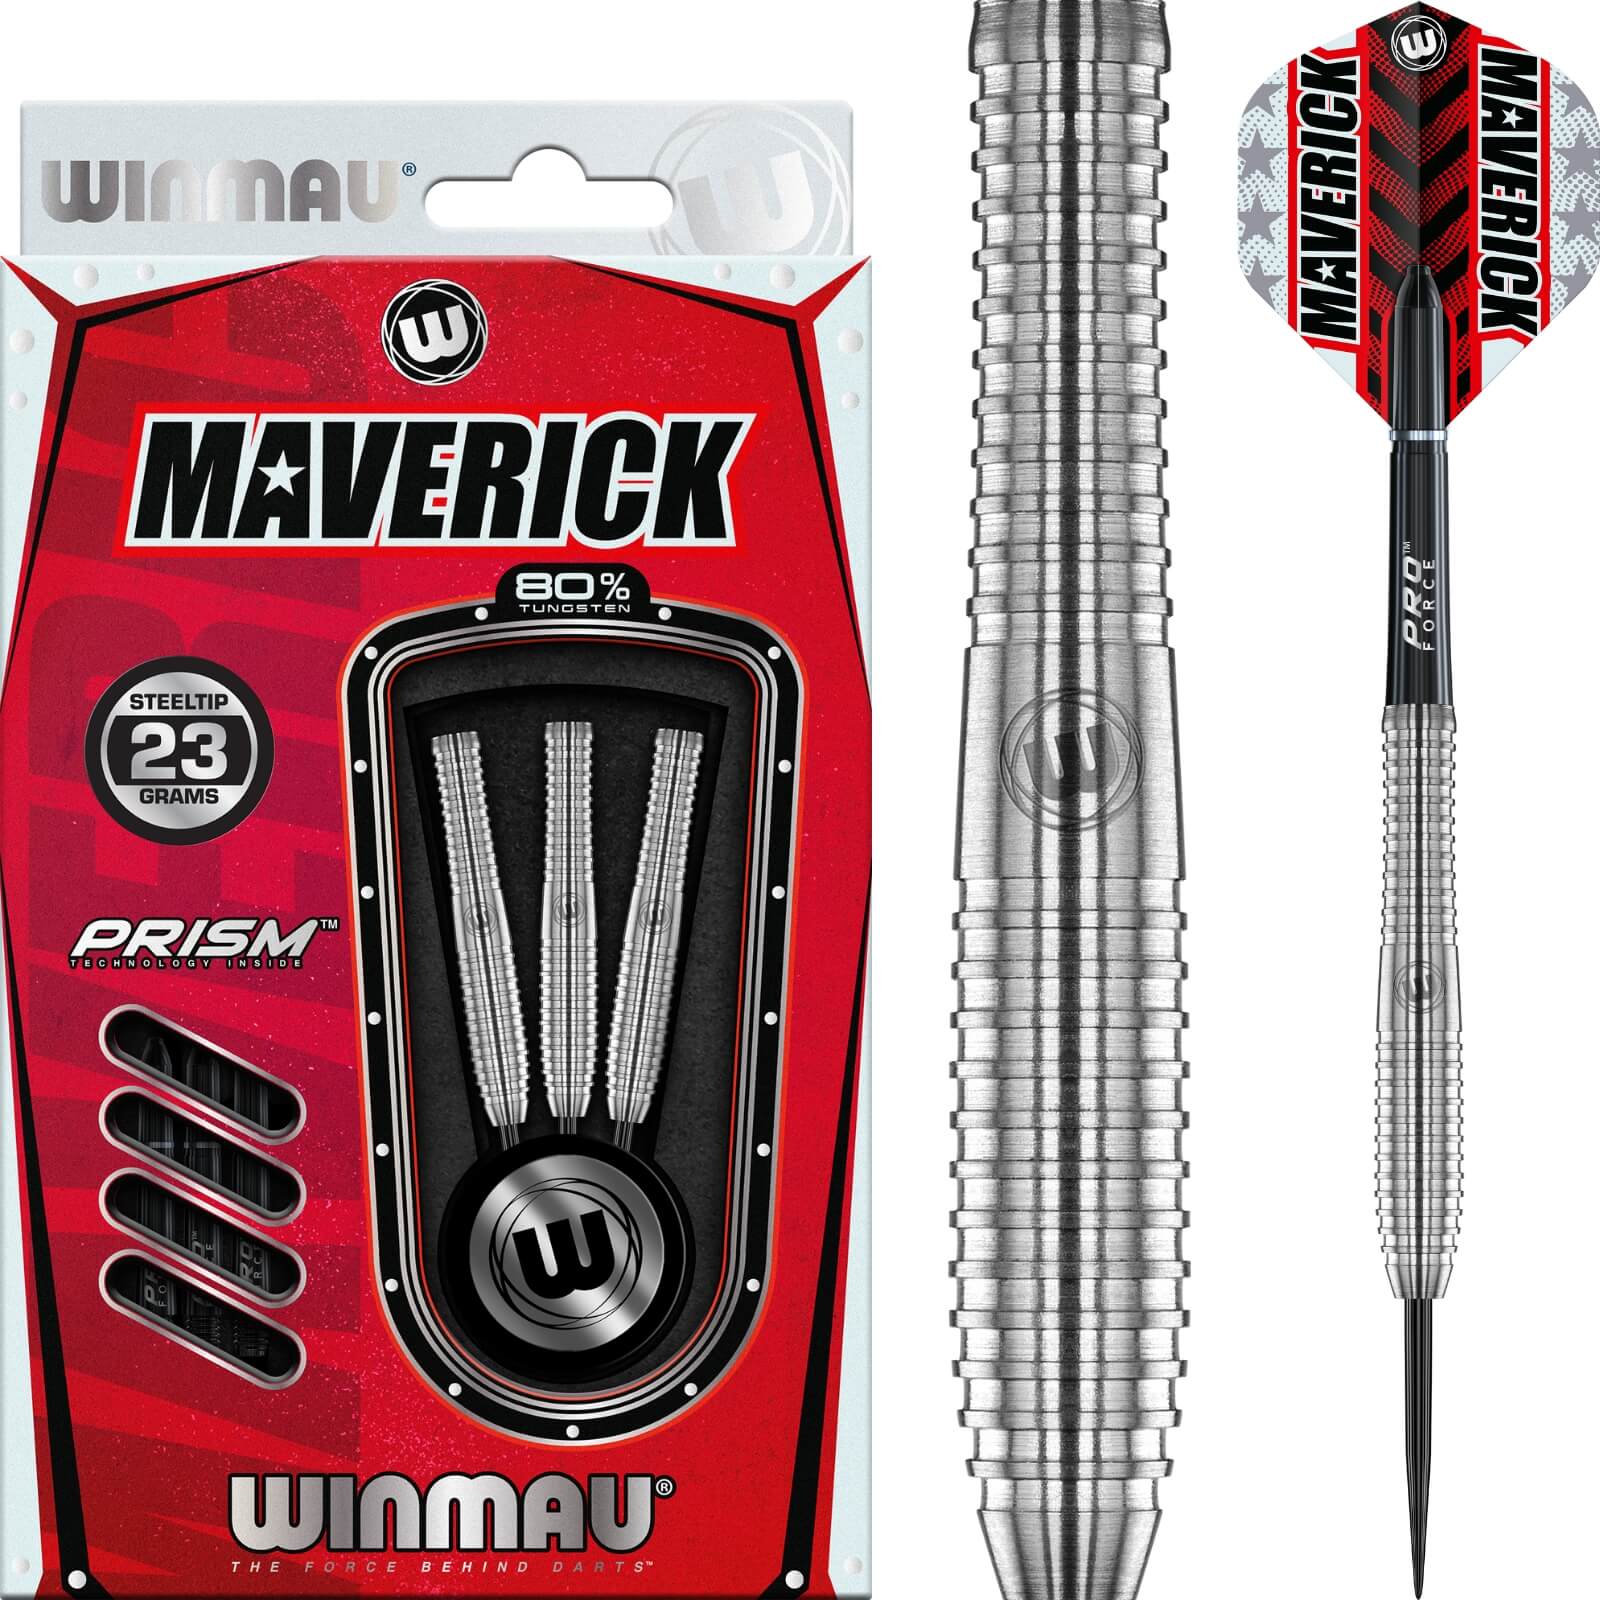 Darts - Winmau - Maverick Darts - Steel Tip - 80% Tungsten - 21g 22g 23g 24g 25g 